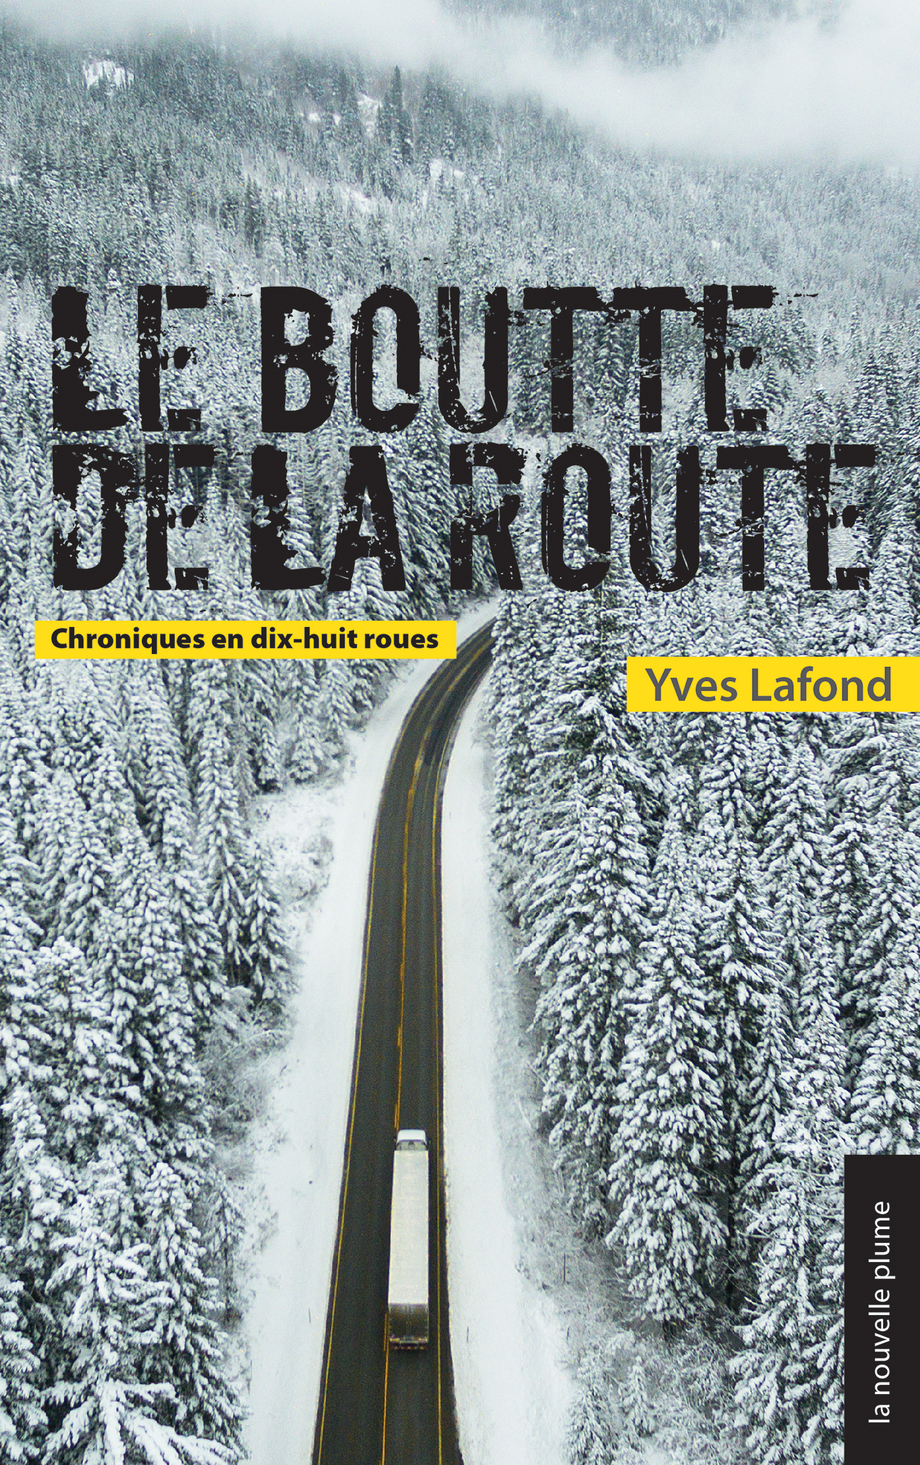 Le boutte de la route : chroniques en dix-huit roues de Yves Lafond